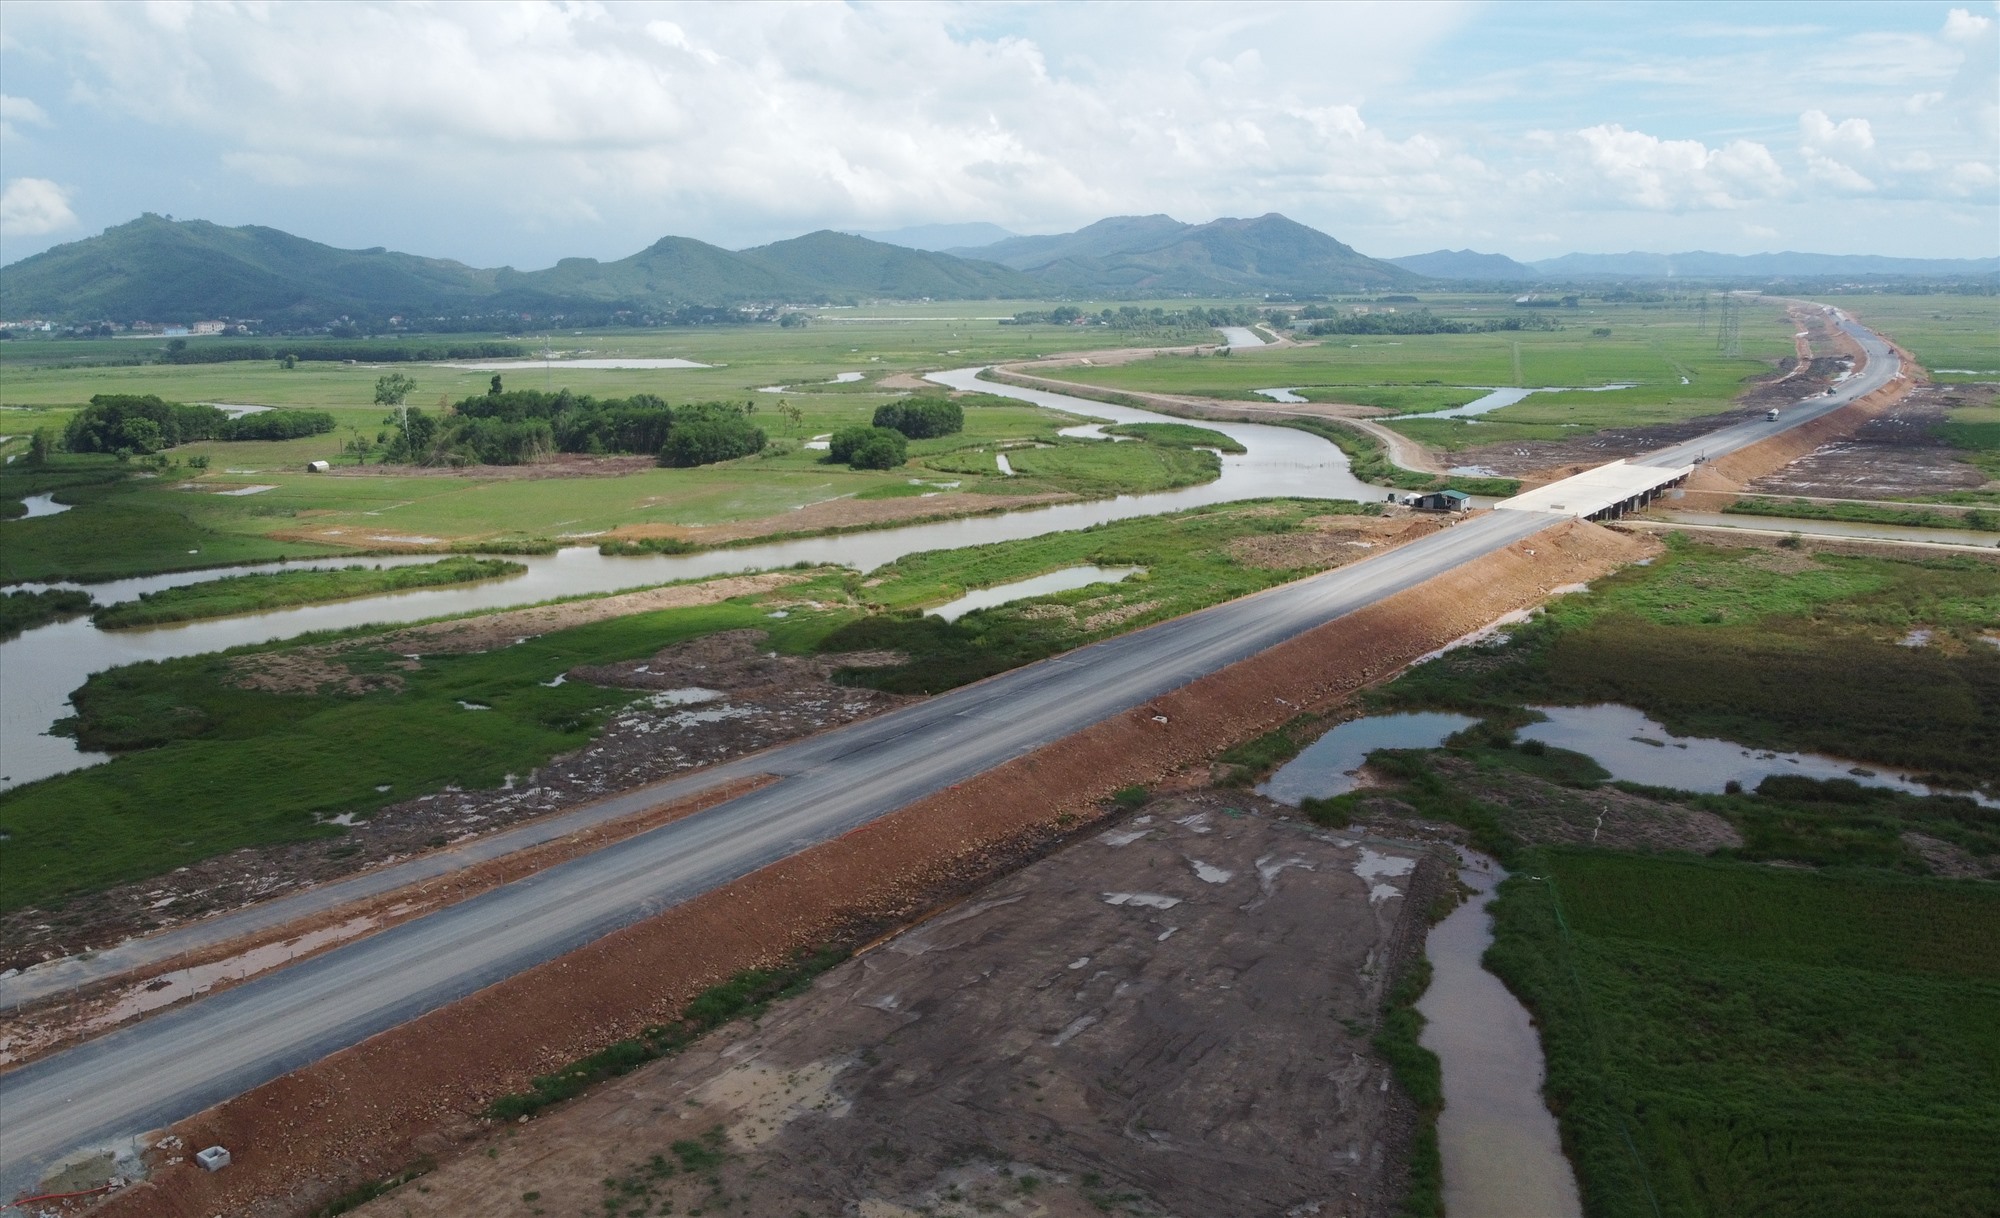 Dự án thành phần đầu tư xây dựng tuyến cao tốc Quốc lộ 45 - Nghi Sơn có tổng chiều dài 43,28km đi qua địa phận huyện Nông Cống và thị xã Nghi Sơn (tỉnh Thanh Hóa), dự án có tổng mức đầu tư hơn 5.534 tỉ đồng. Ảnh: Quách Du